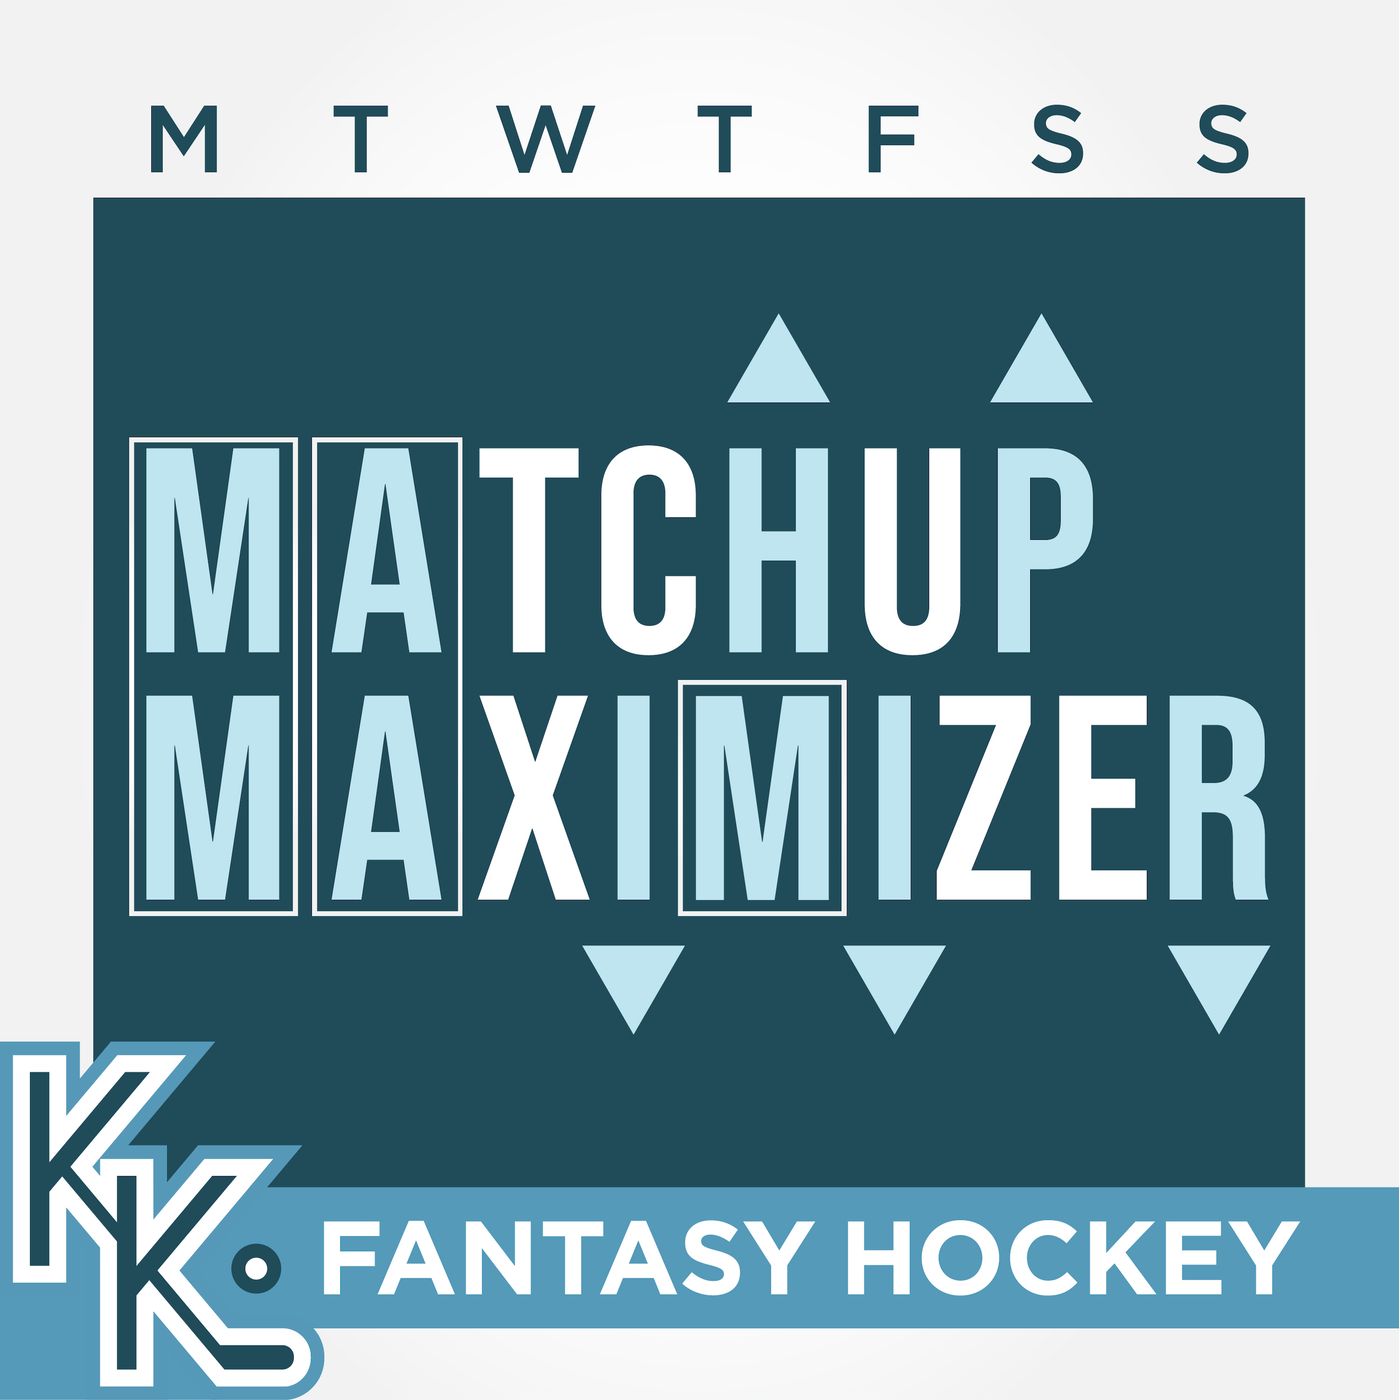 Matchup Maximizer - Week 24